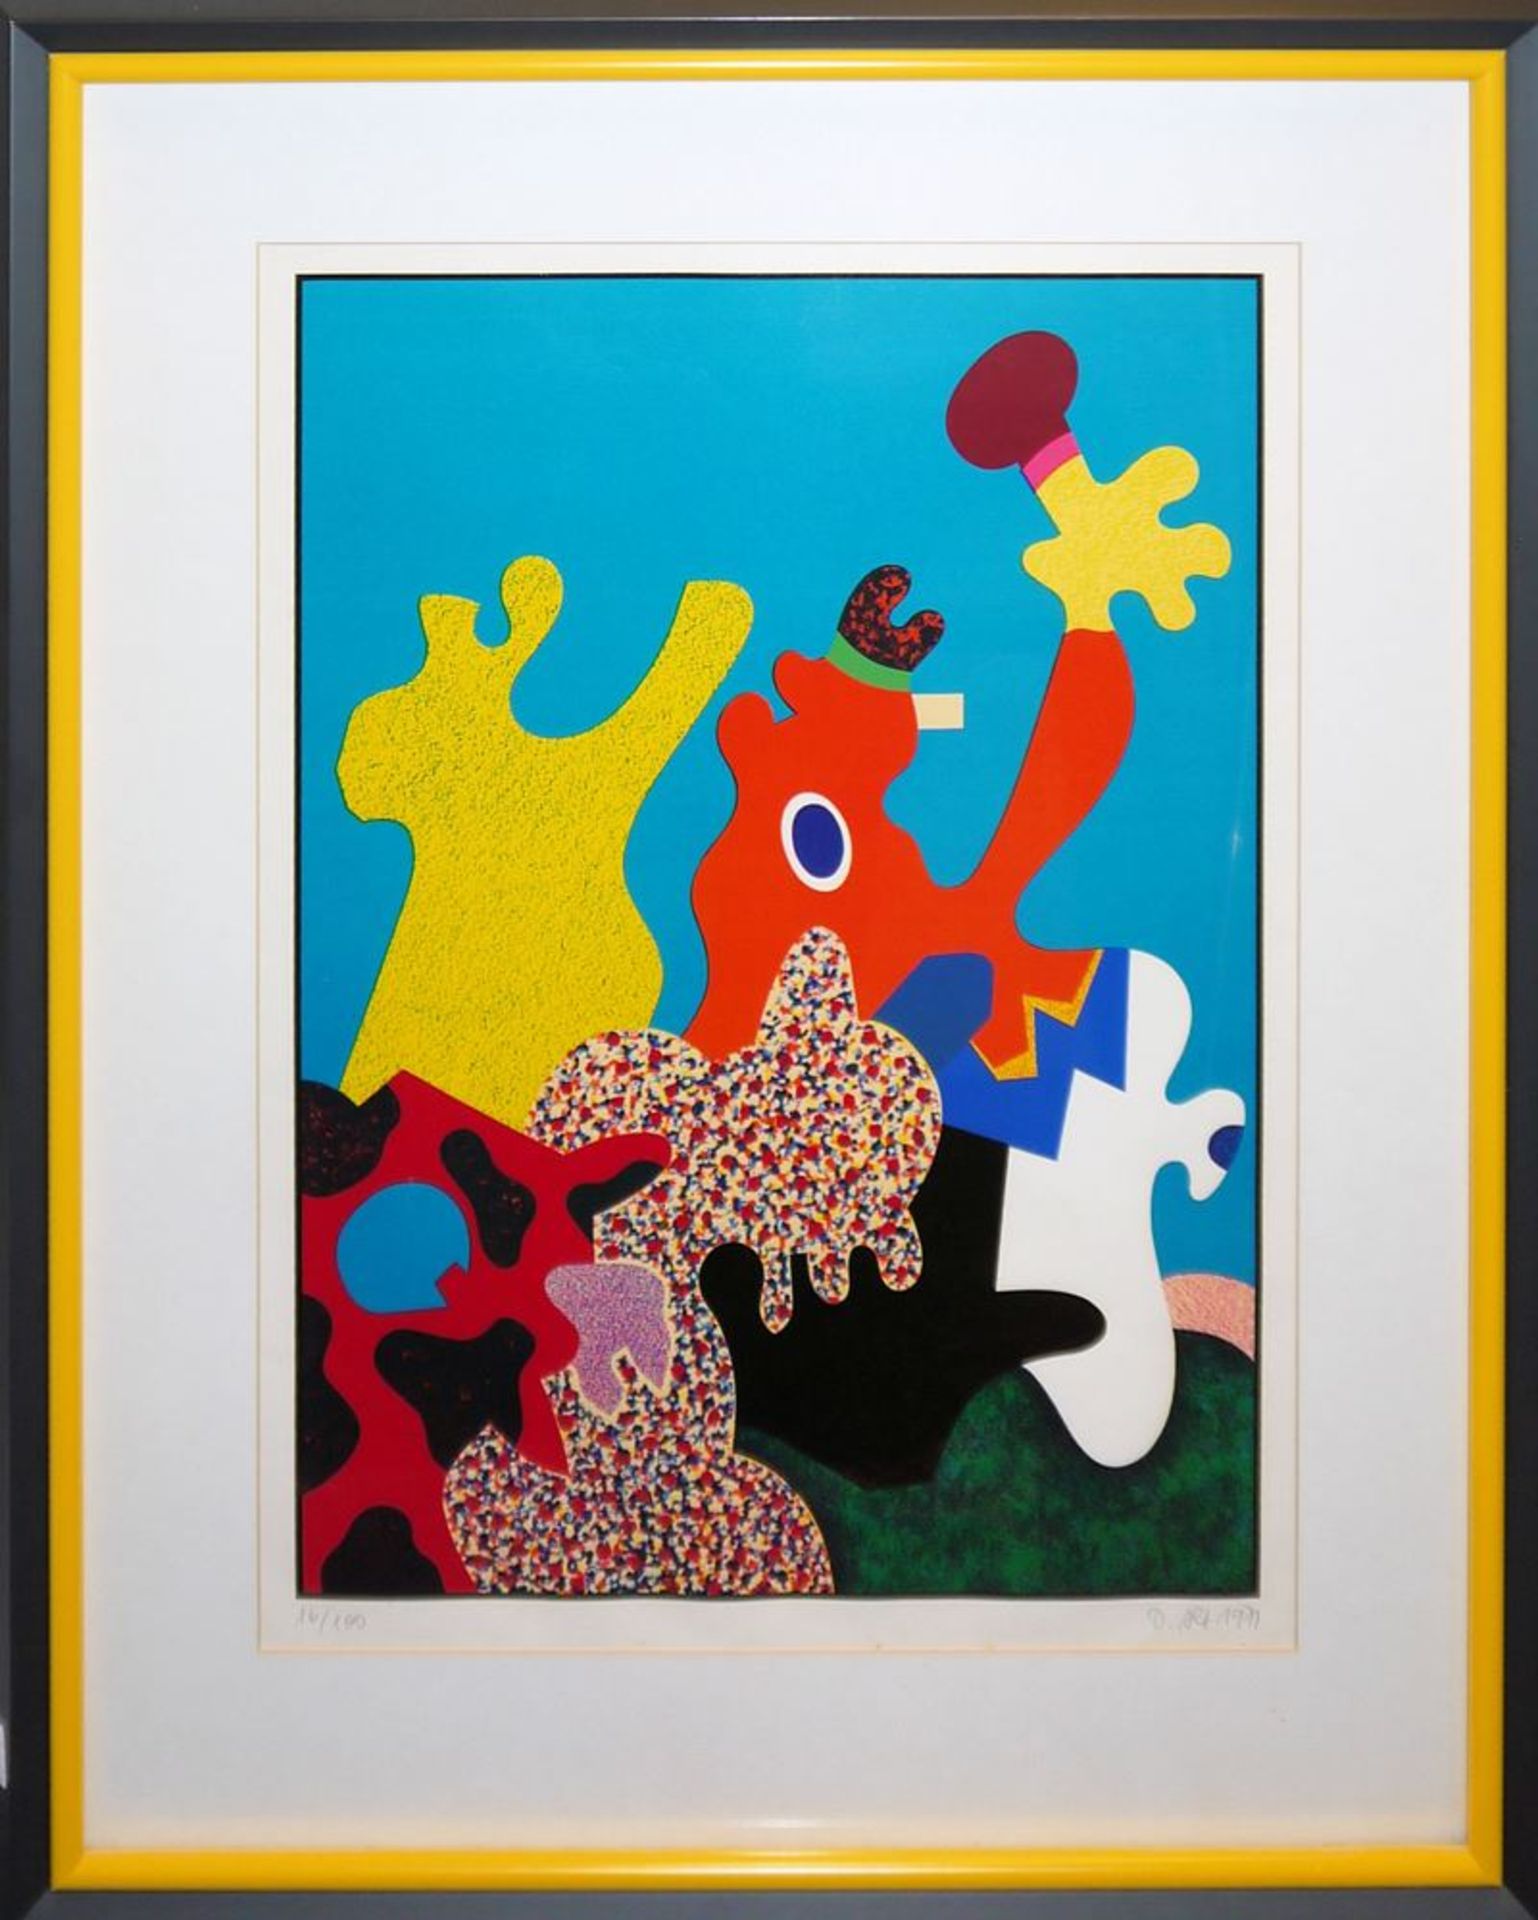 Otmar Alt, Abstrakte Komposition, signierte Farbserigraphie von 1971, in edler Galerierahmung